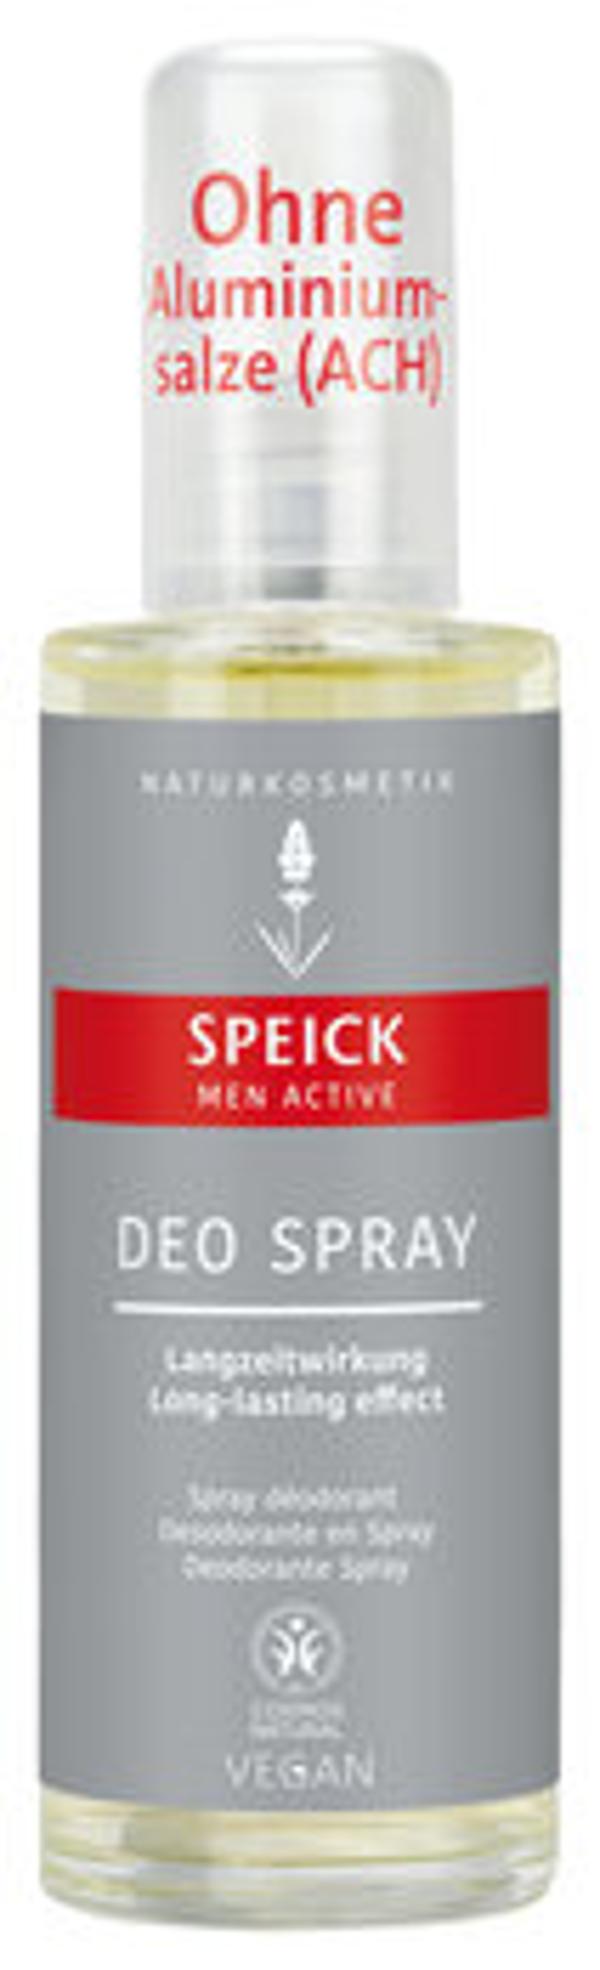 Produktfoto zu Men Active Deo Spray, 75 ml